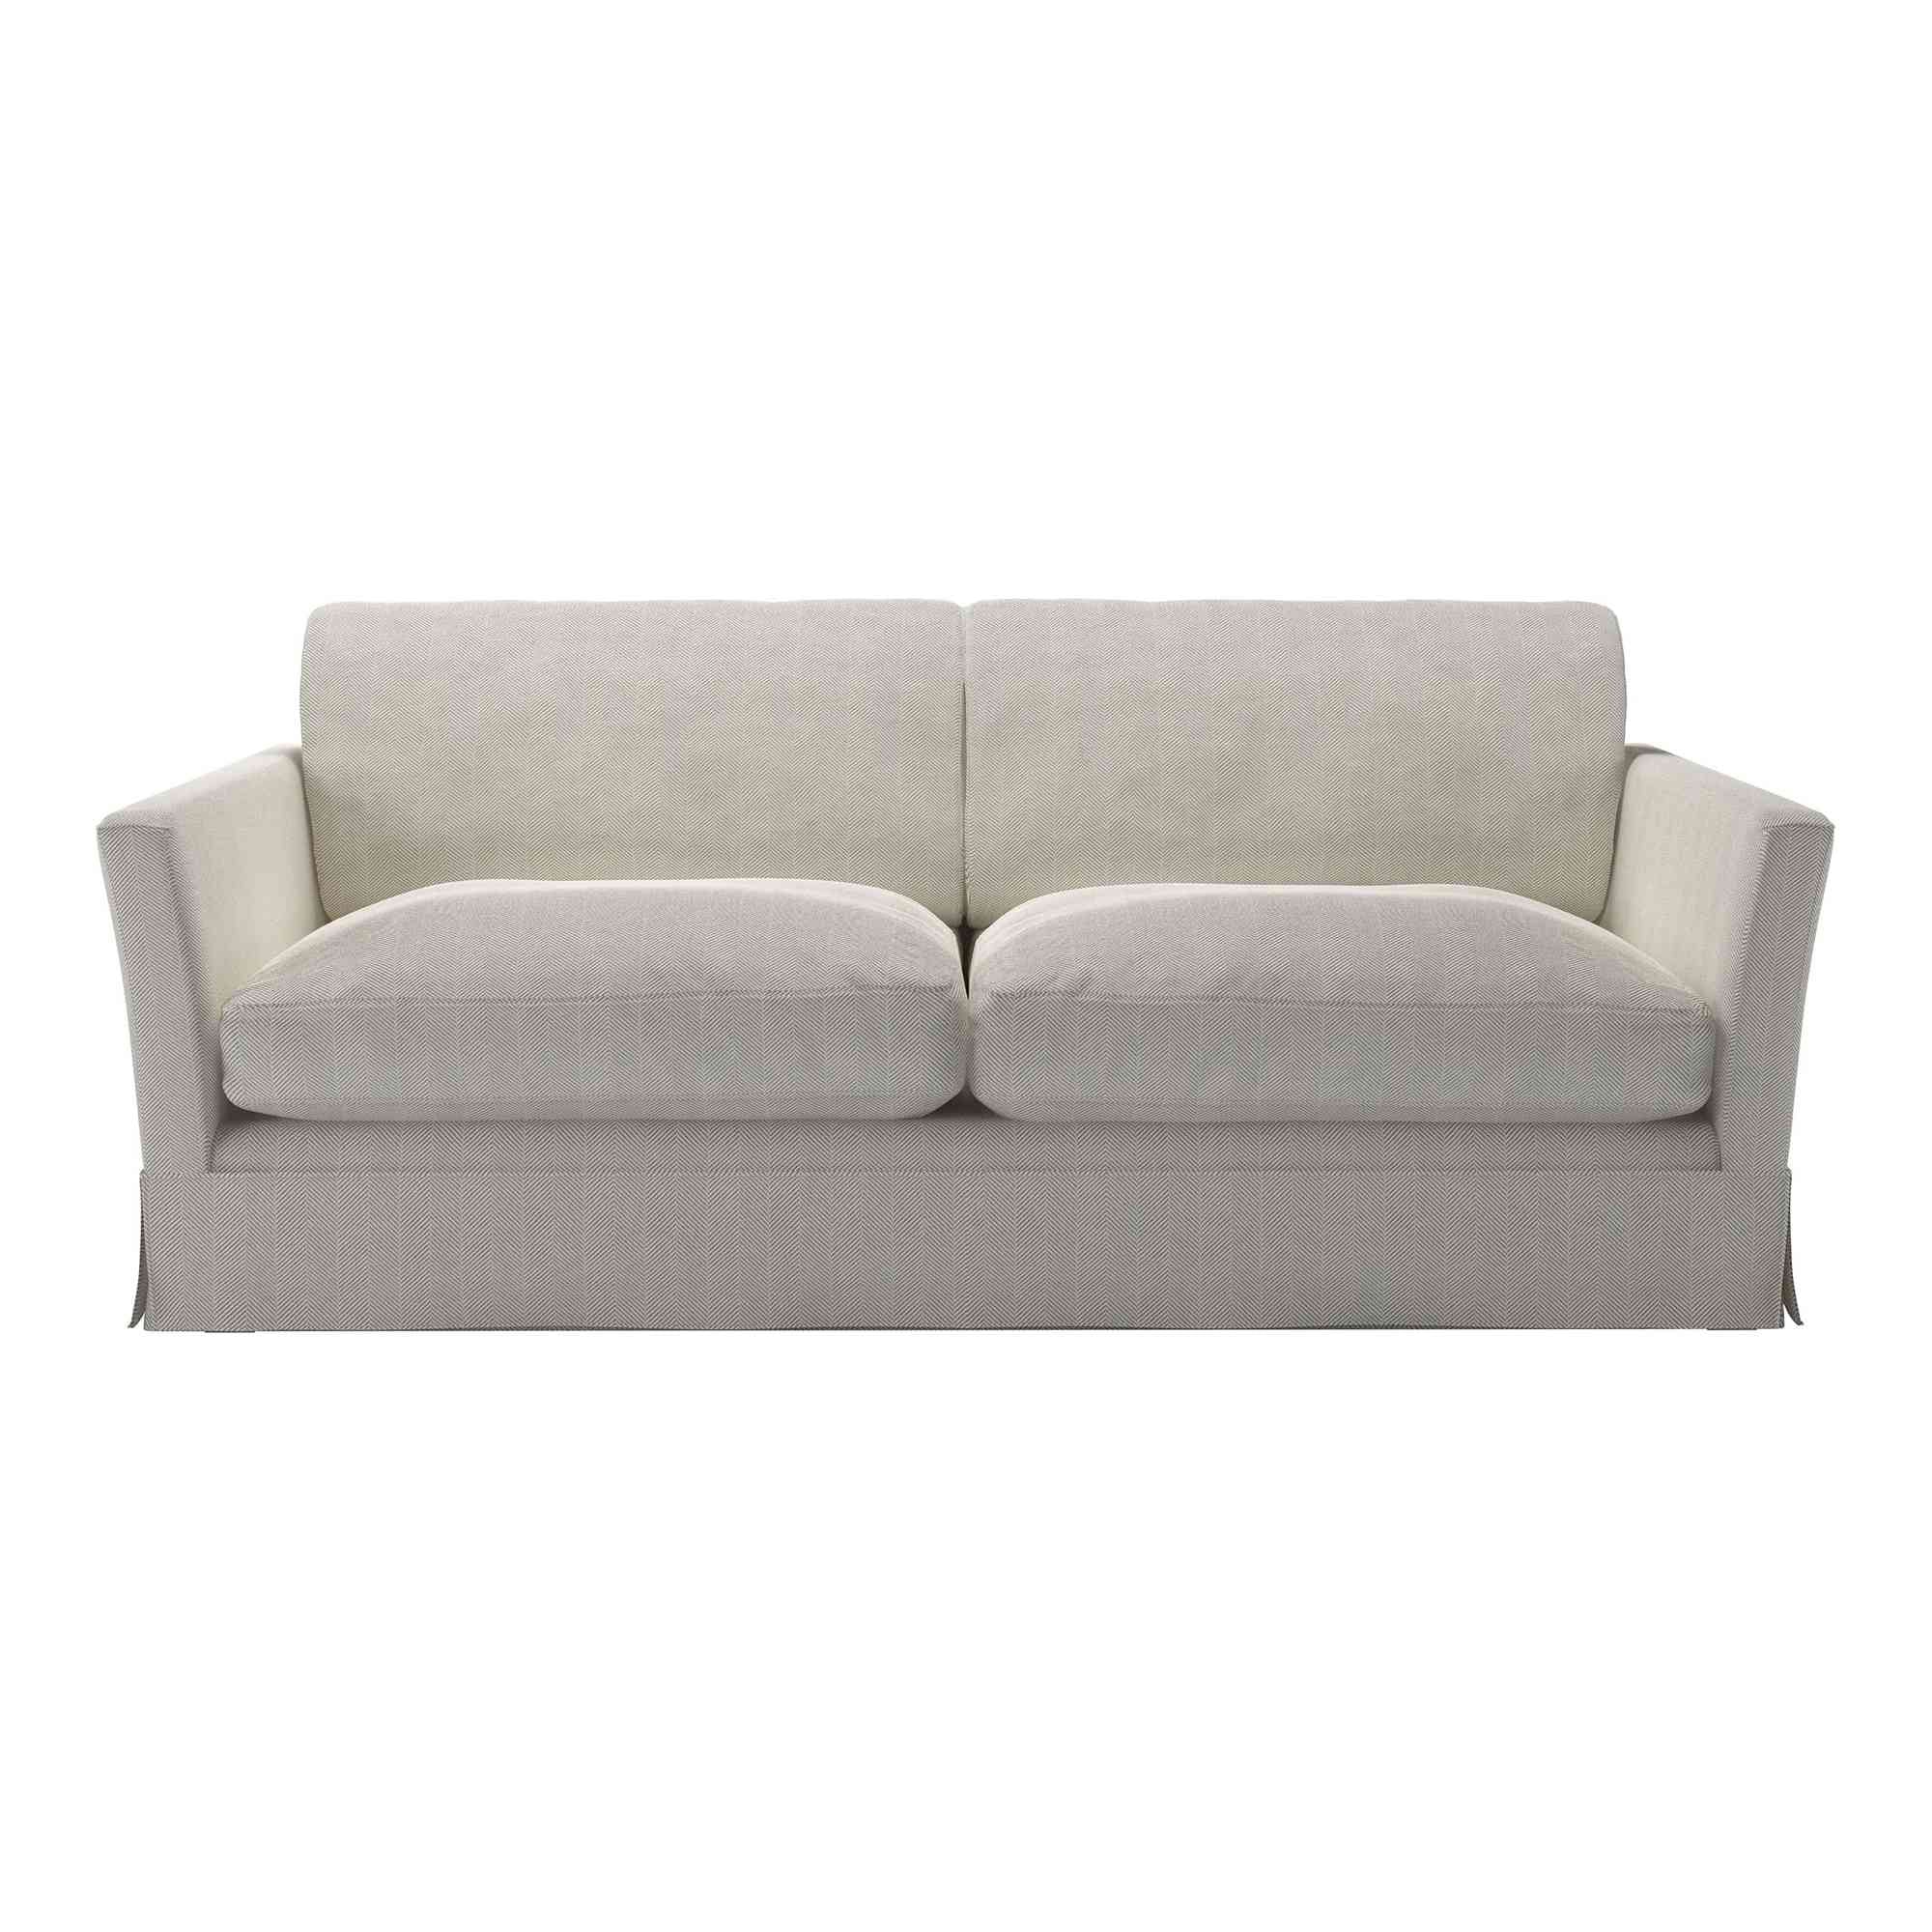 Otto Clay House Herringbone Weave Sofa - 3 Seater